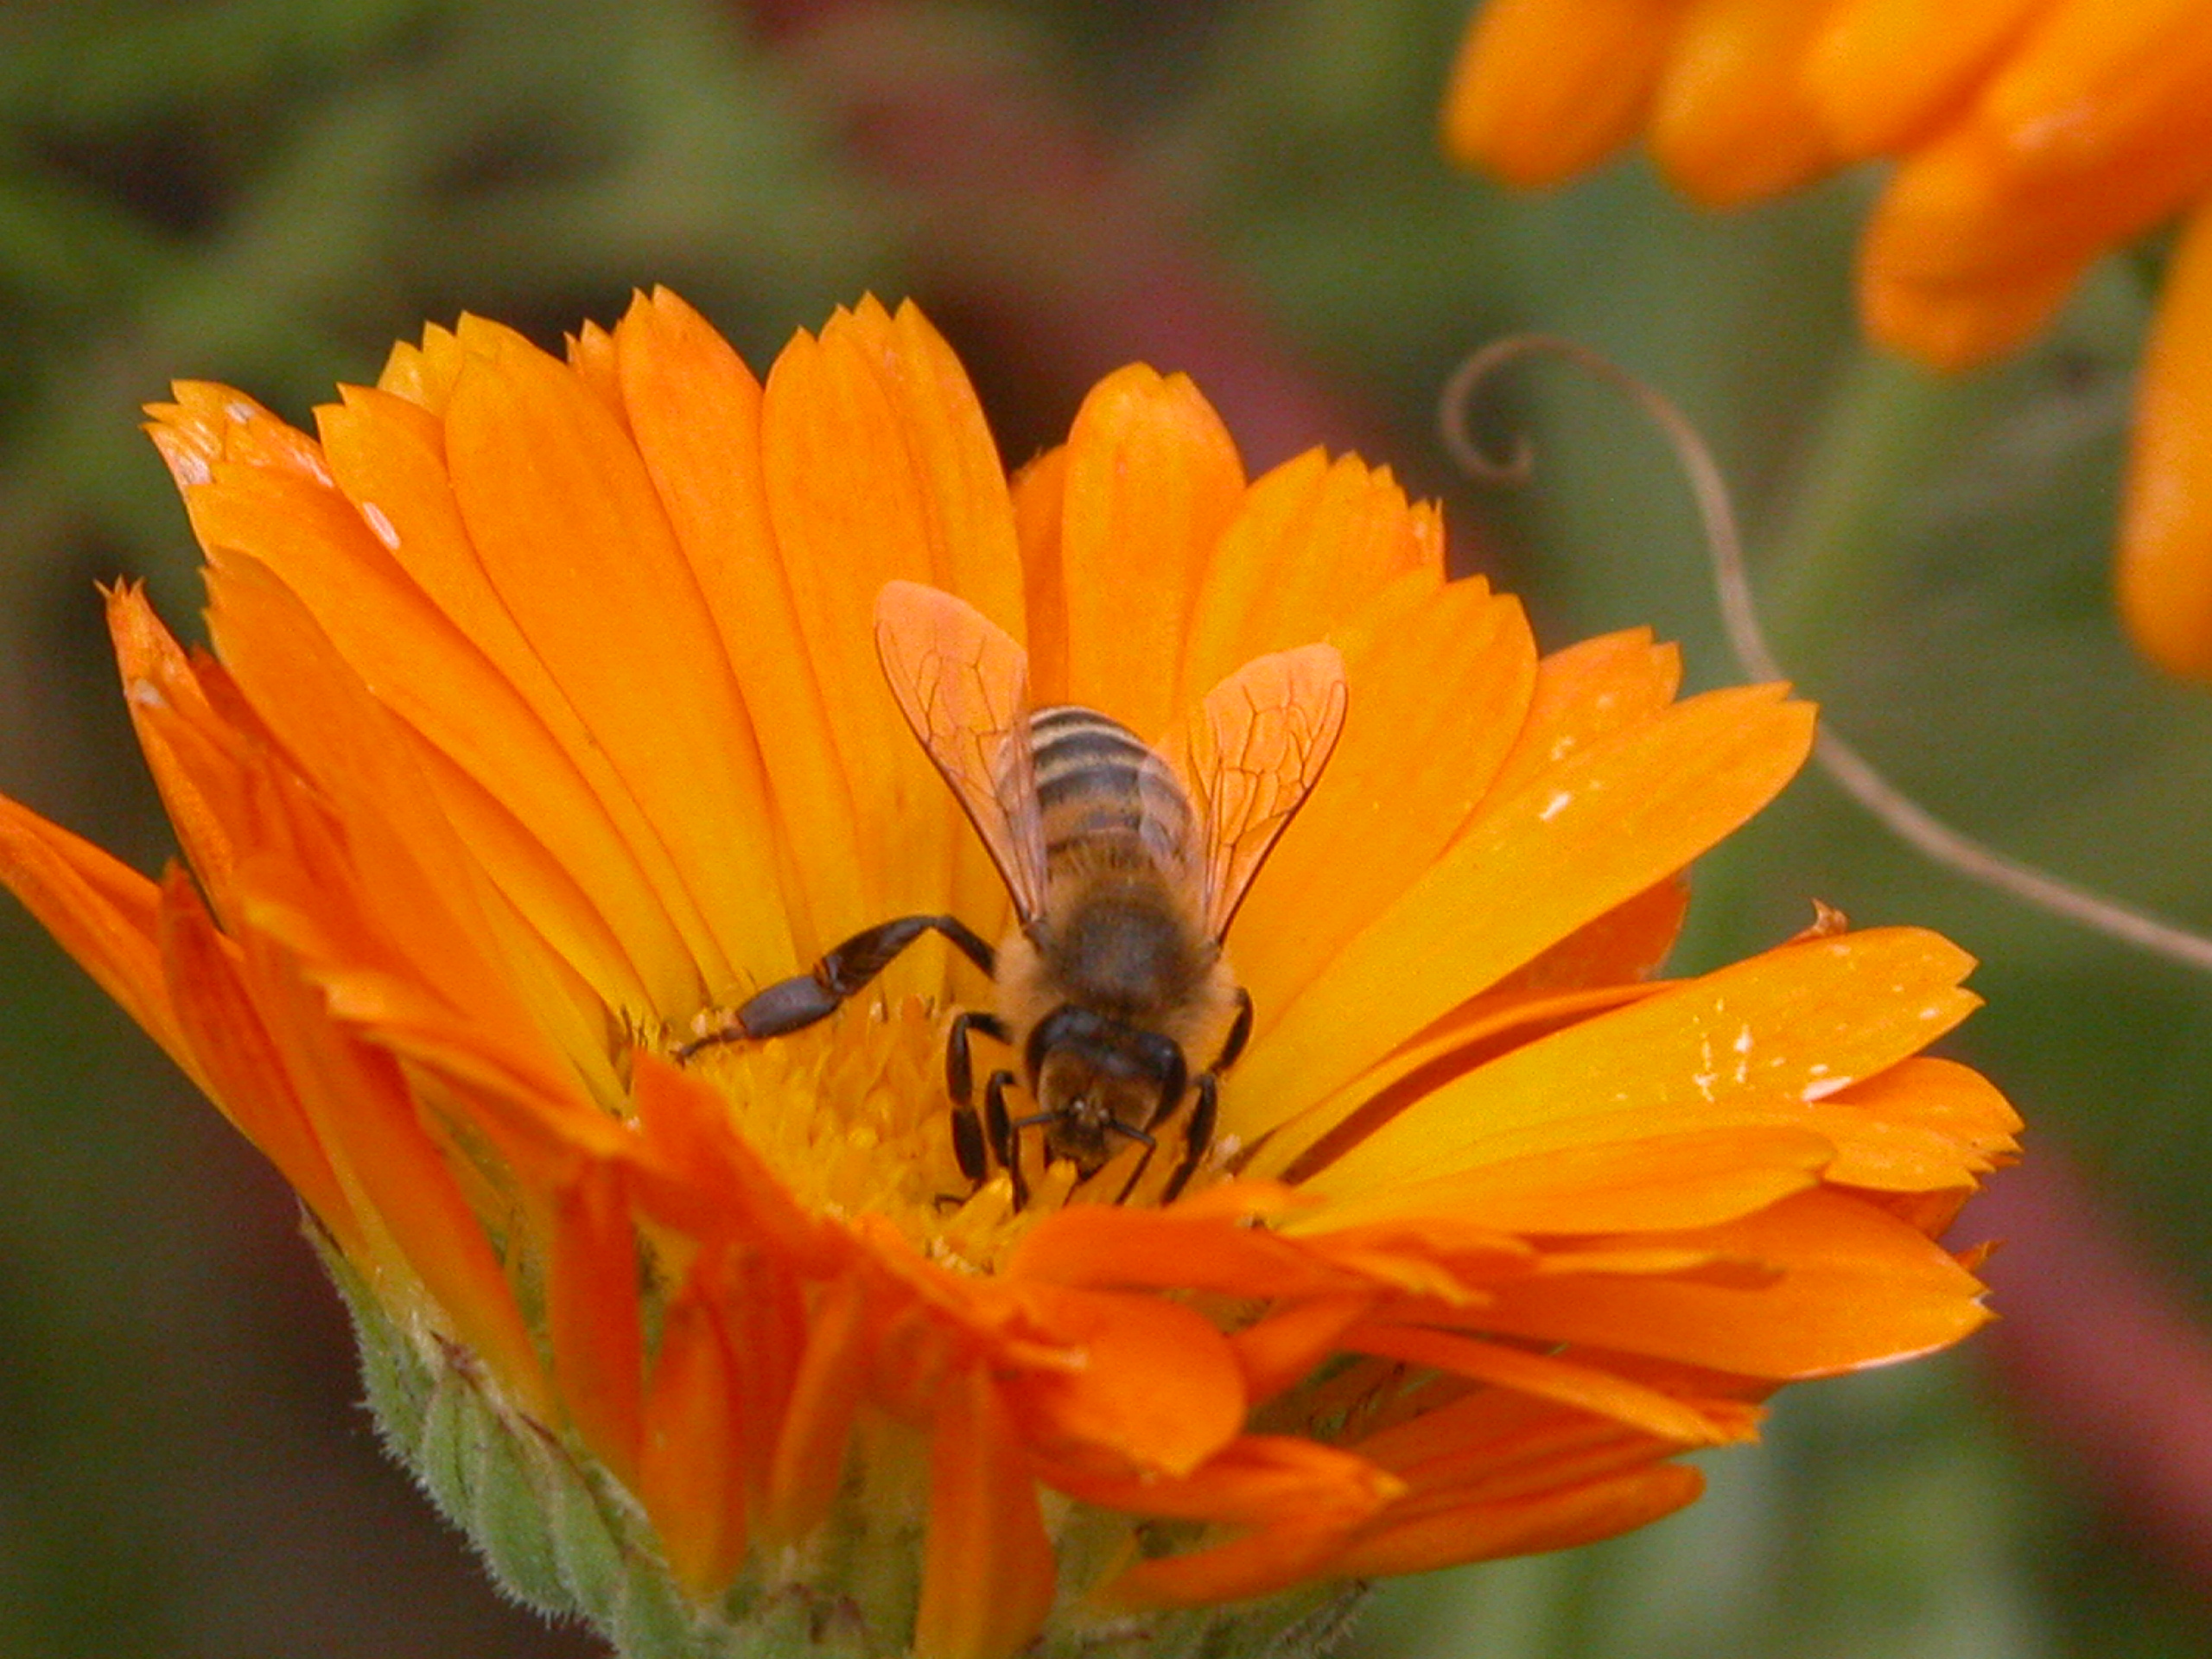 Forscher: Glyphosat beeinträchtigt Orientierungsverhalten der Bienen – Imker fordern Verbot!